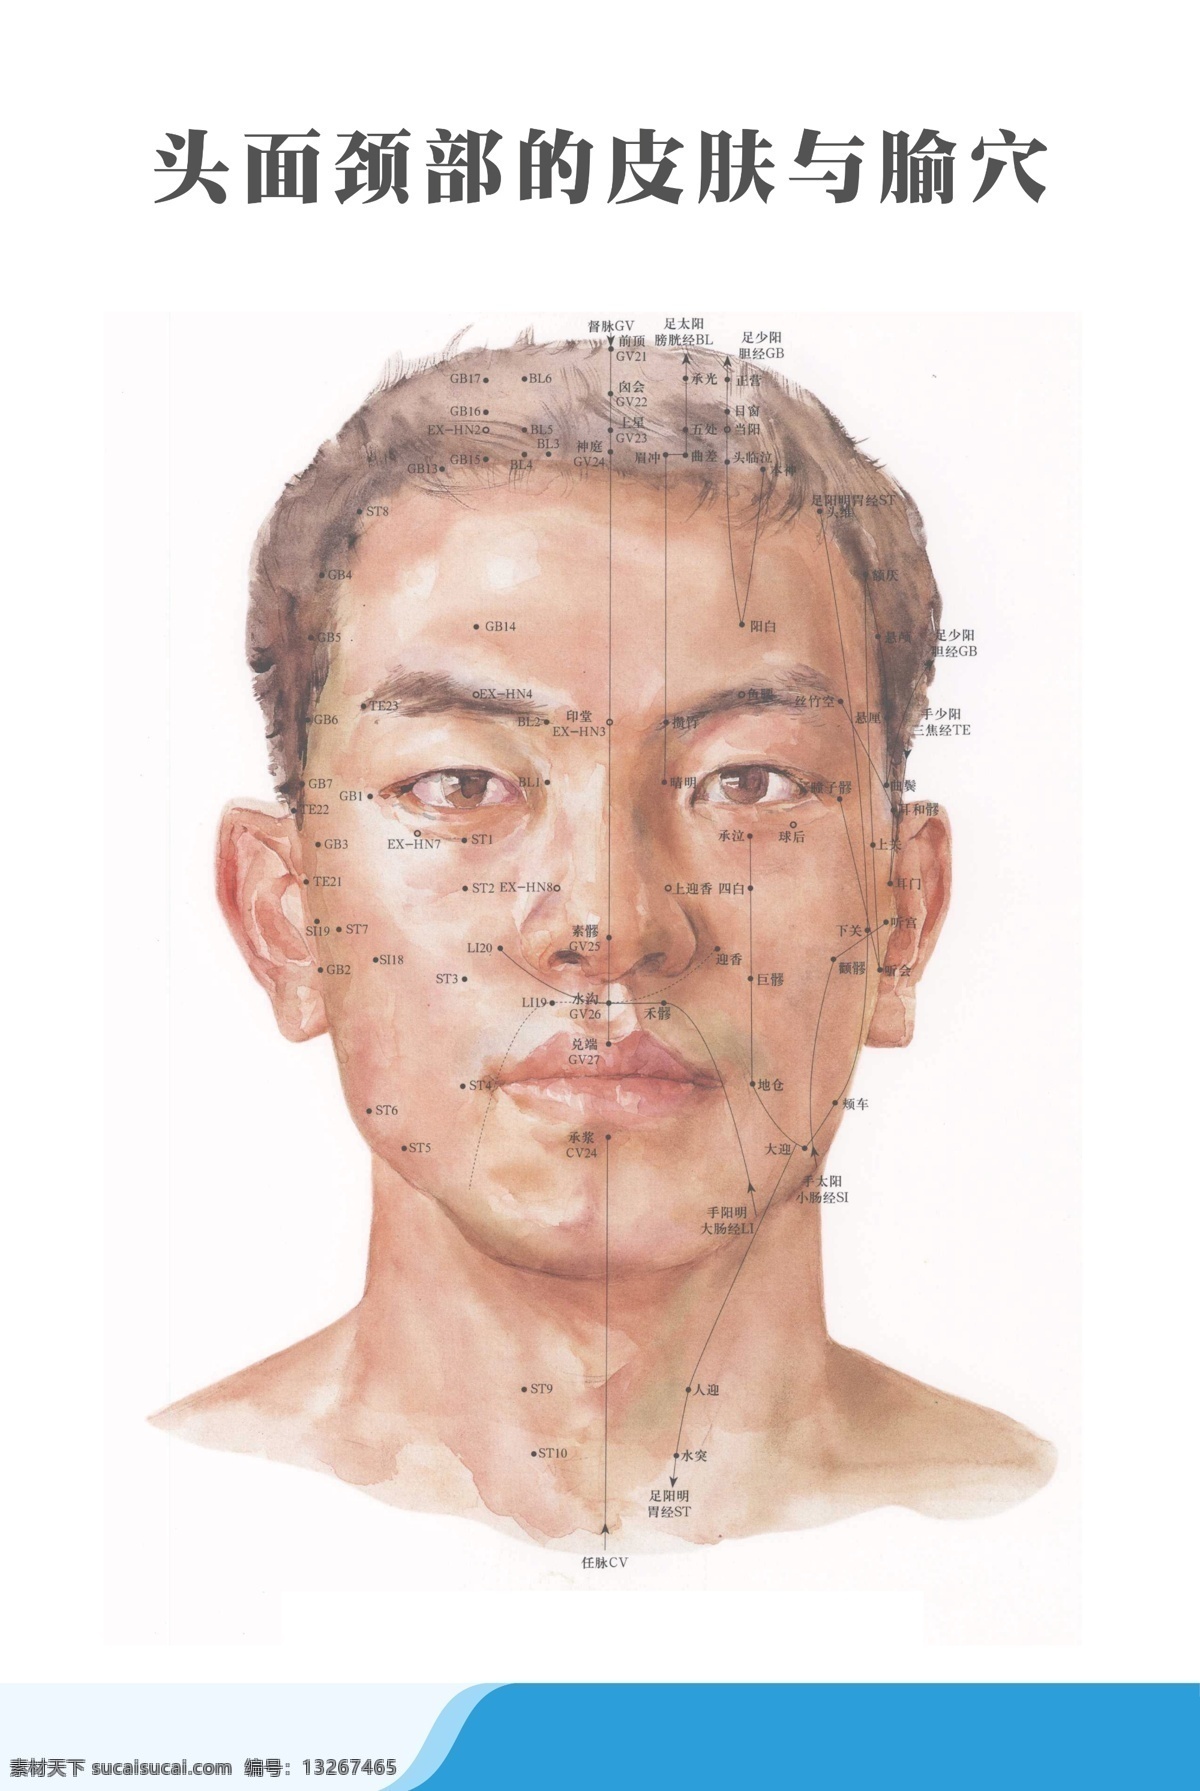 医疗 人体 科室 挂图 头面 颈部 皮肤 腧穴 男性人头 穴位展板 手绘男性 中医展板 理疗展板